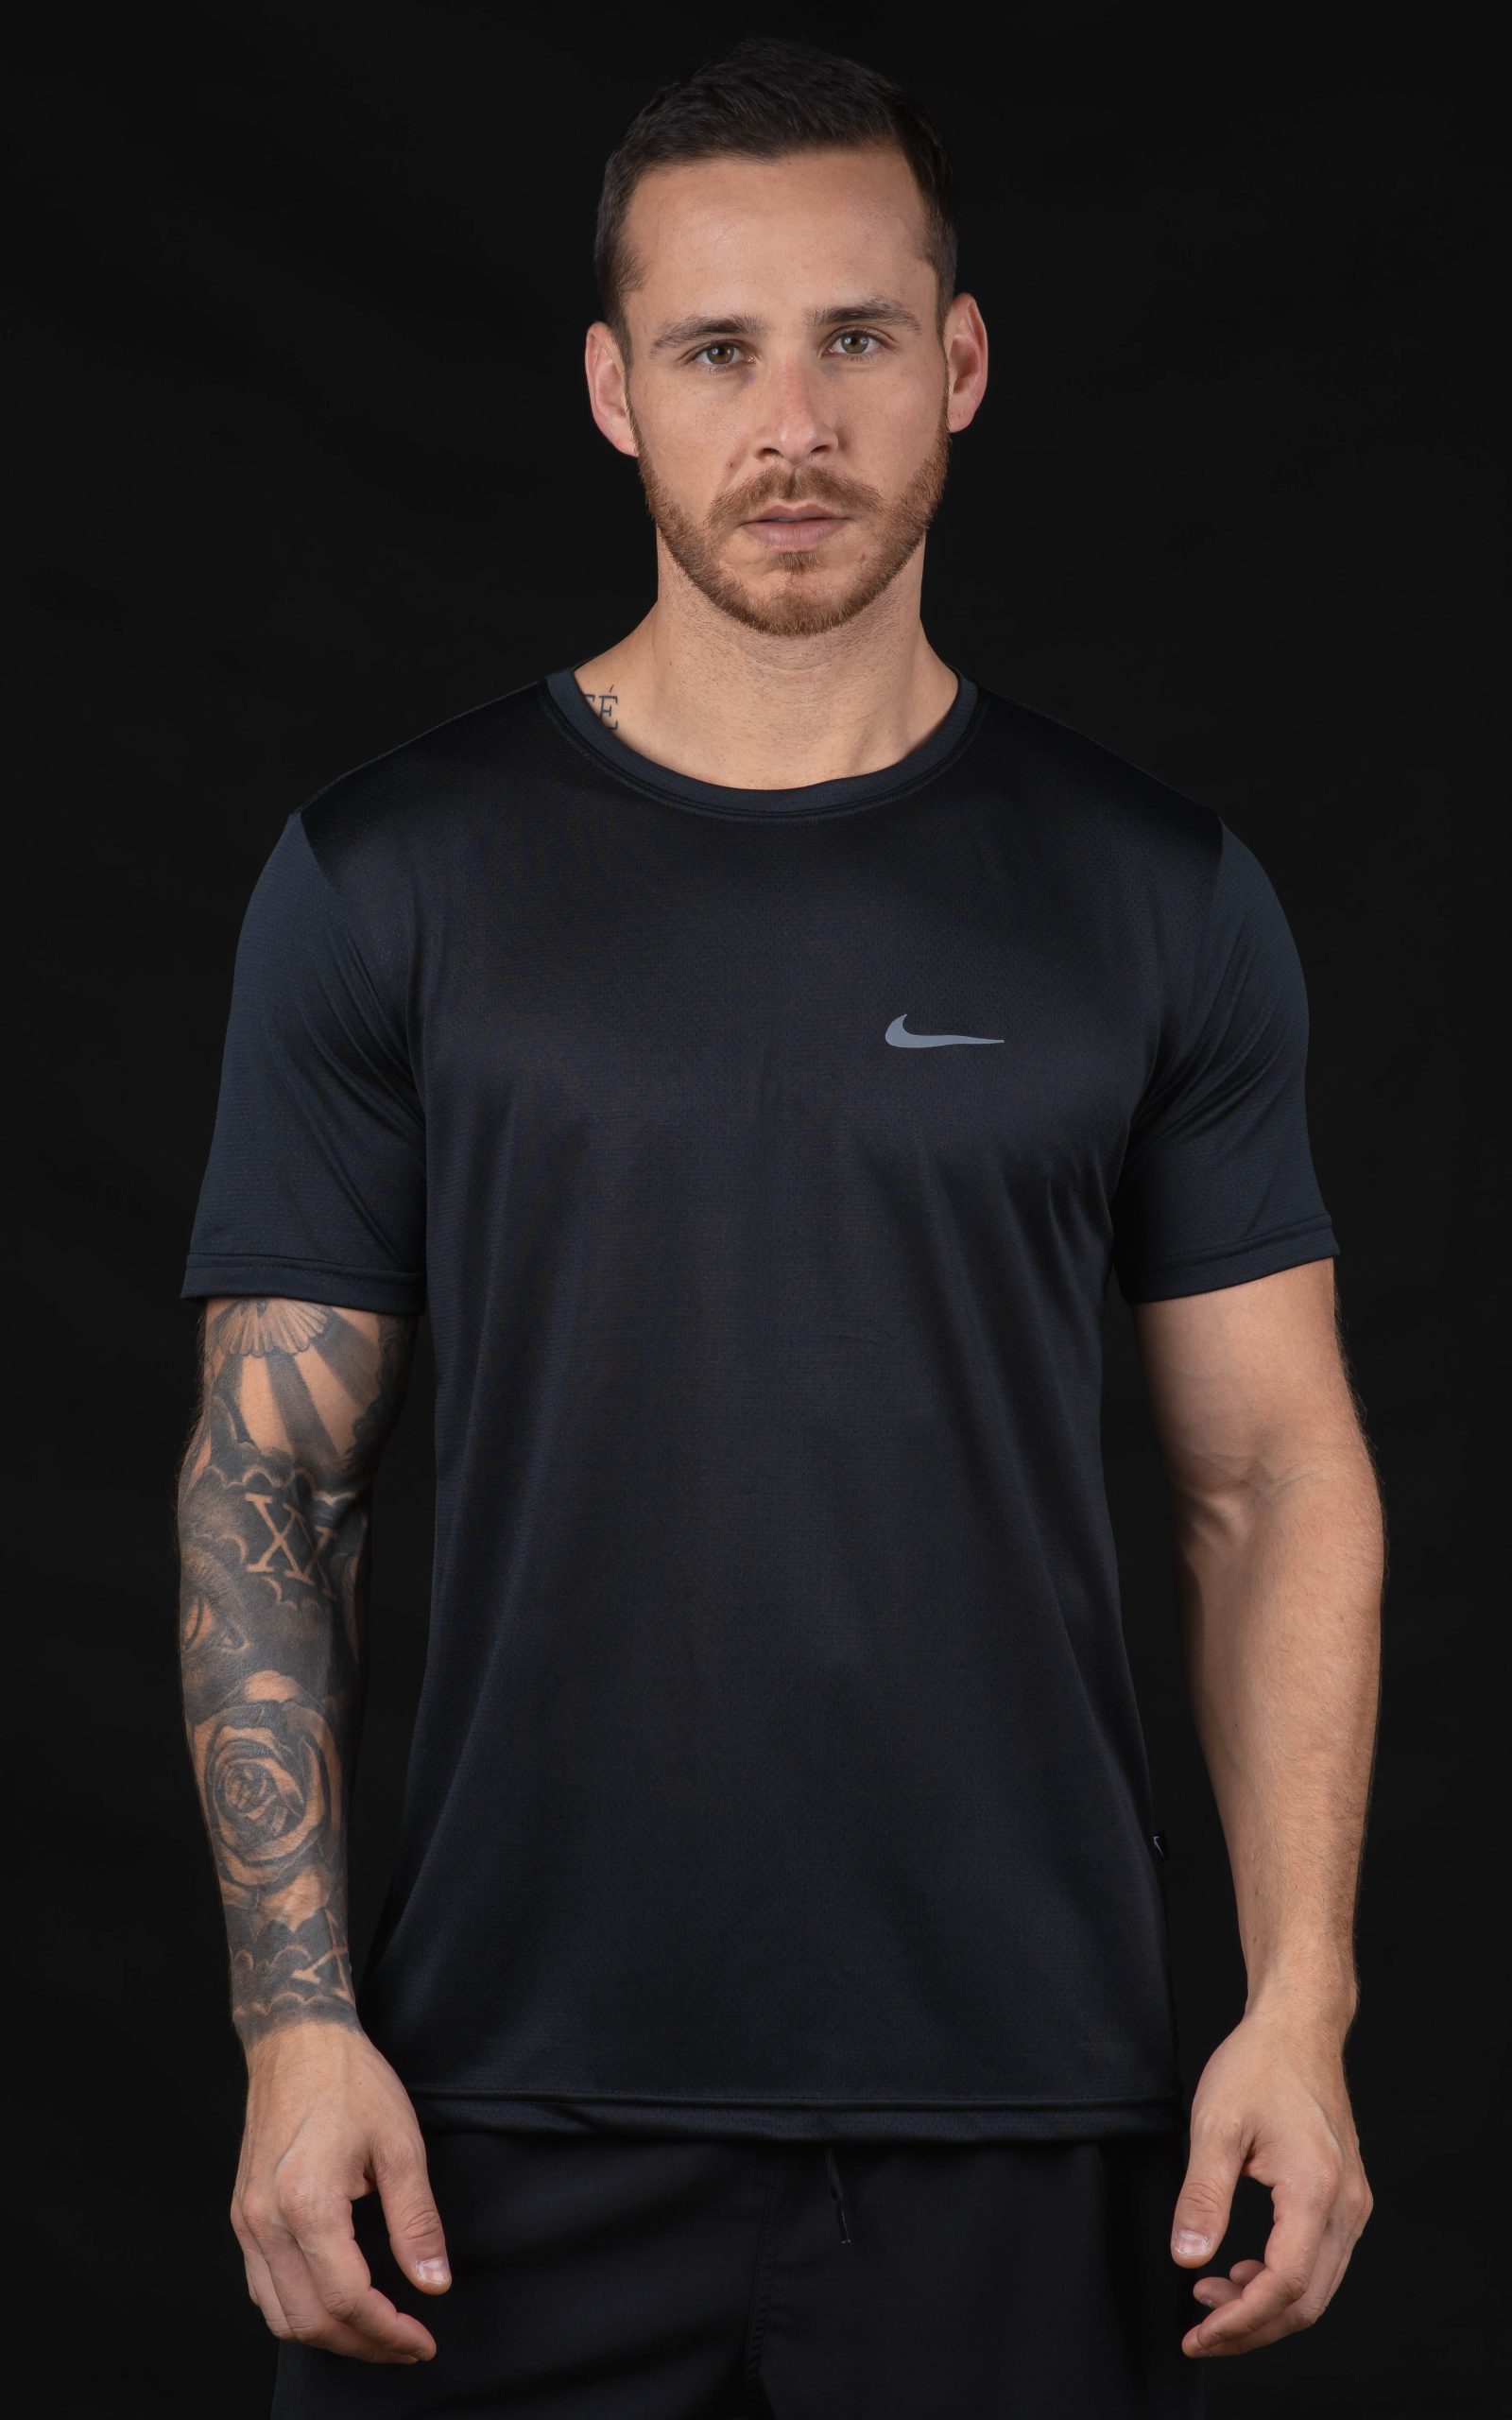 Camiseta Dry Fit Nike Branca, Primeira linha - Adquira já!